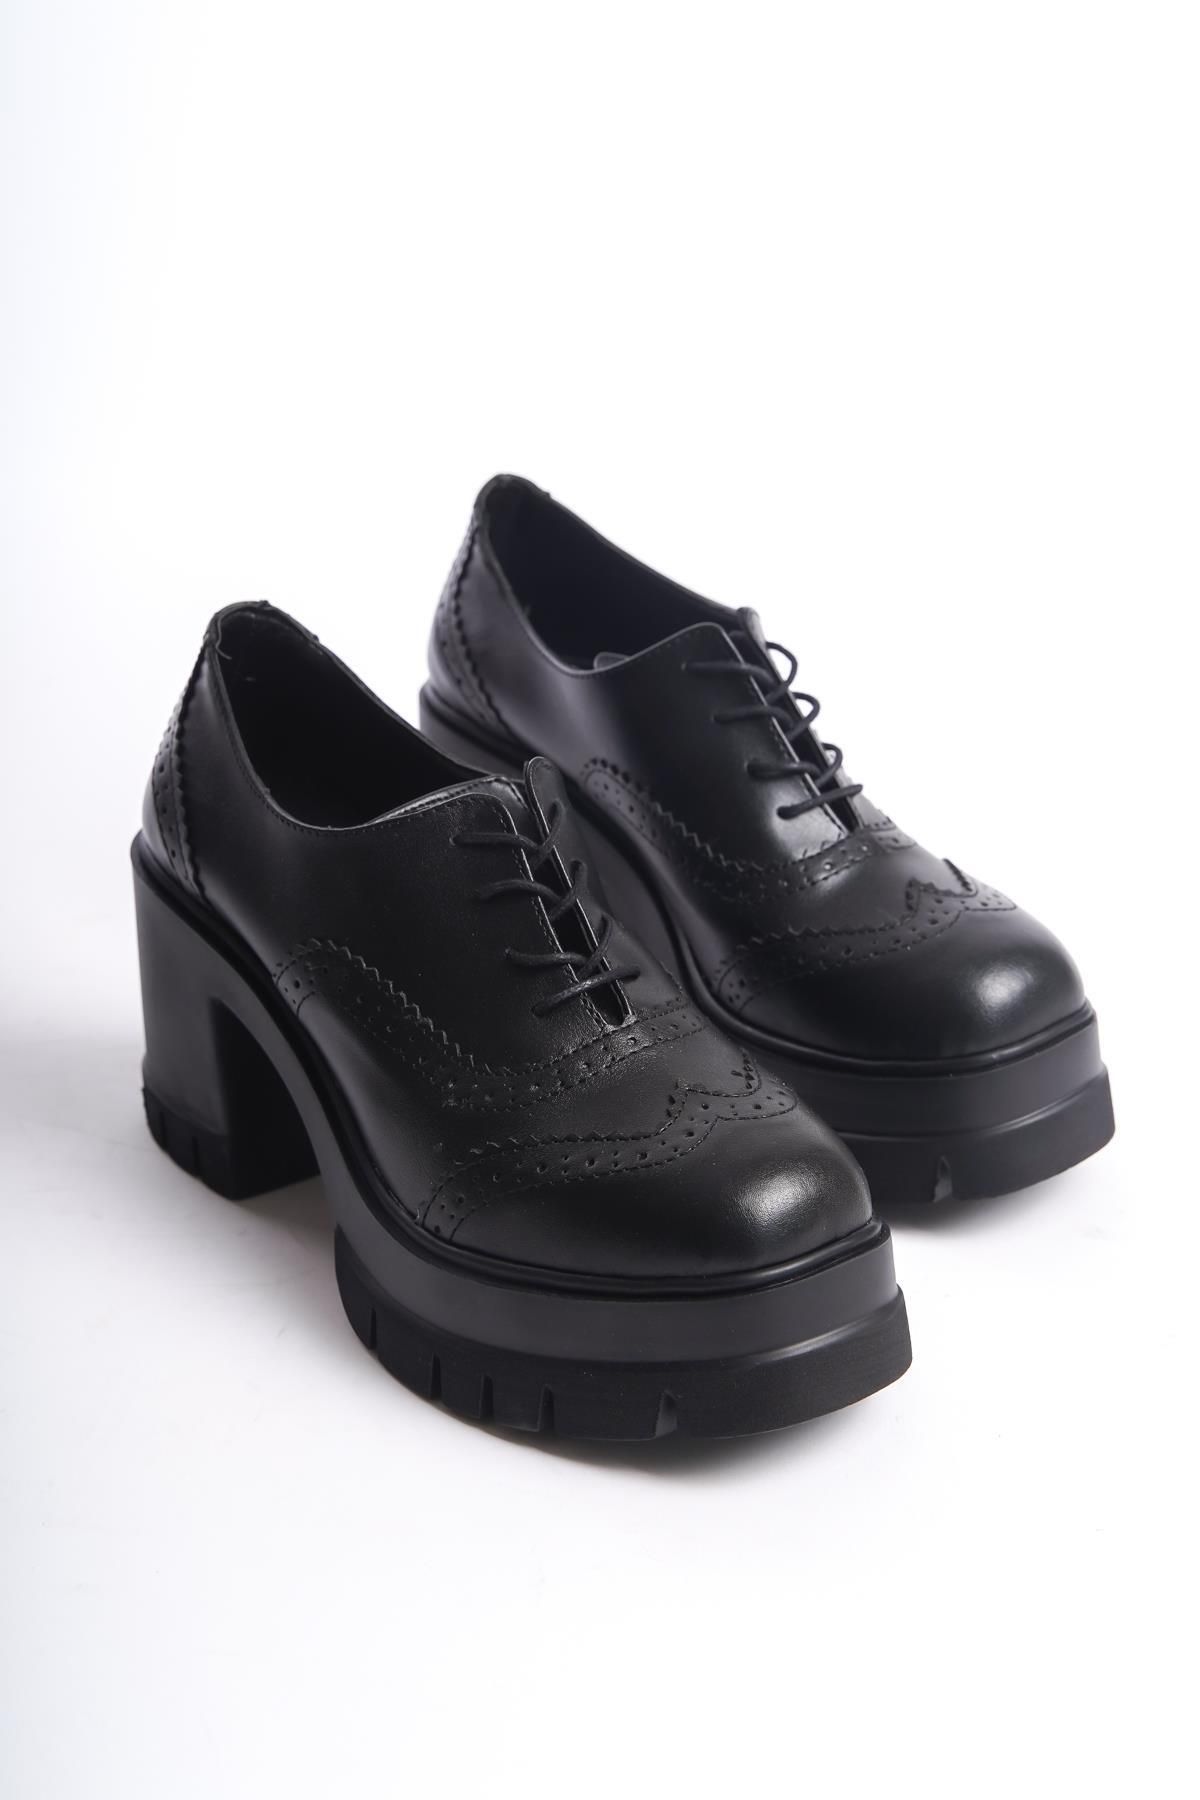 Preshley Kadın Dianai Siyah Cilt Carık Model 8 cm Topuklu Platformlu Ayakkabı